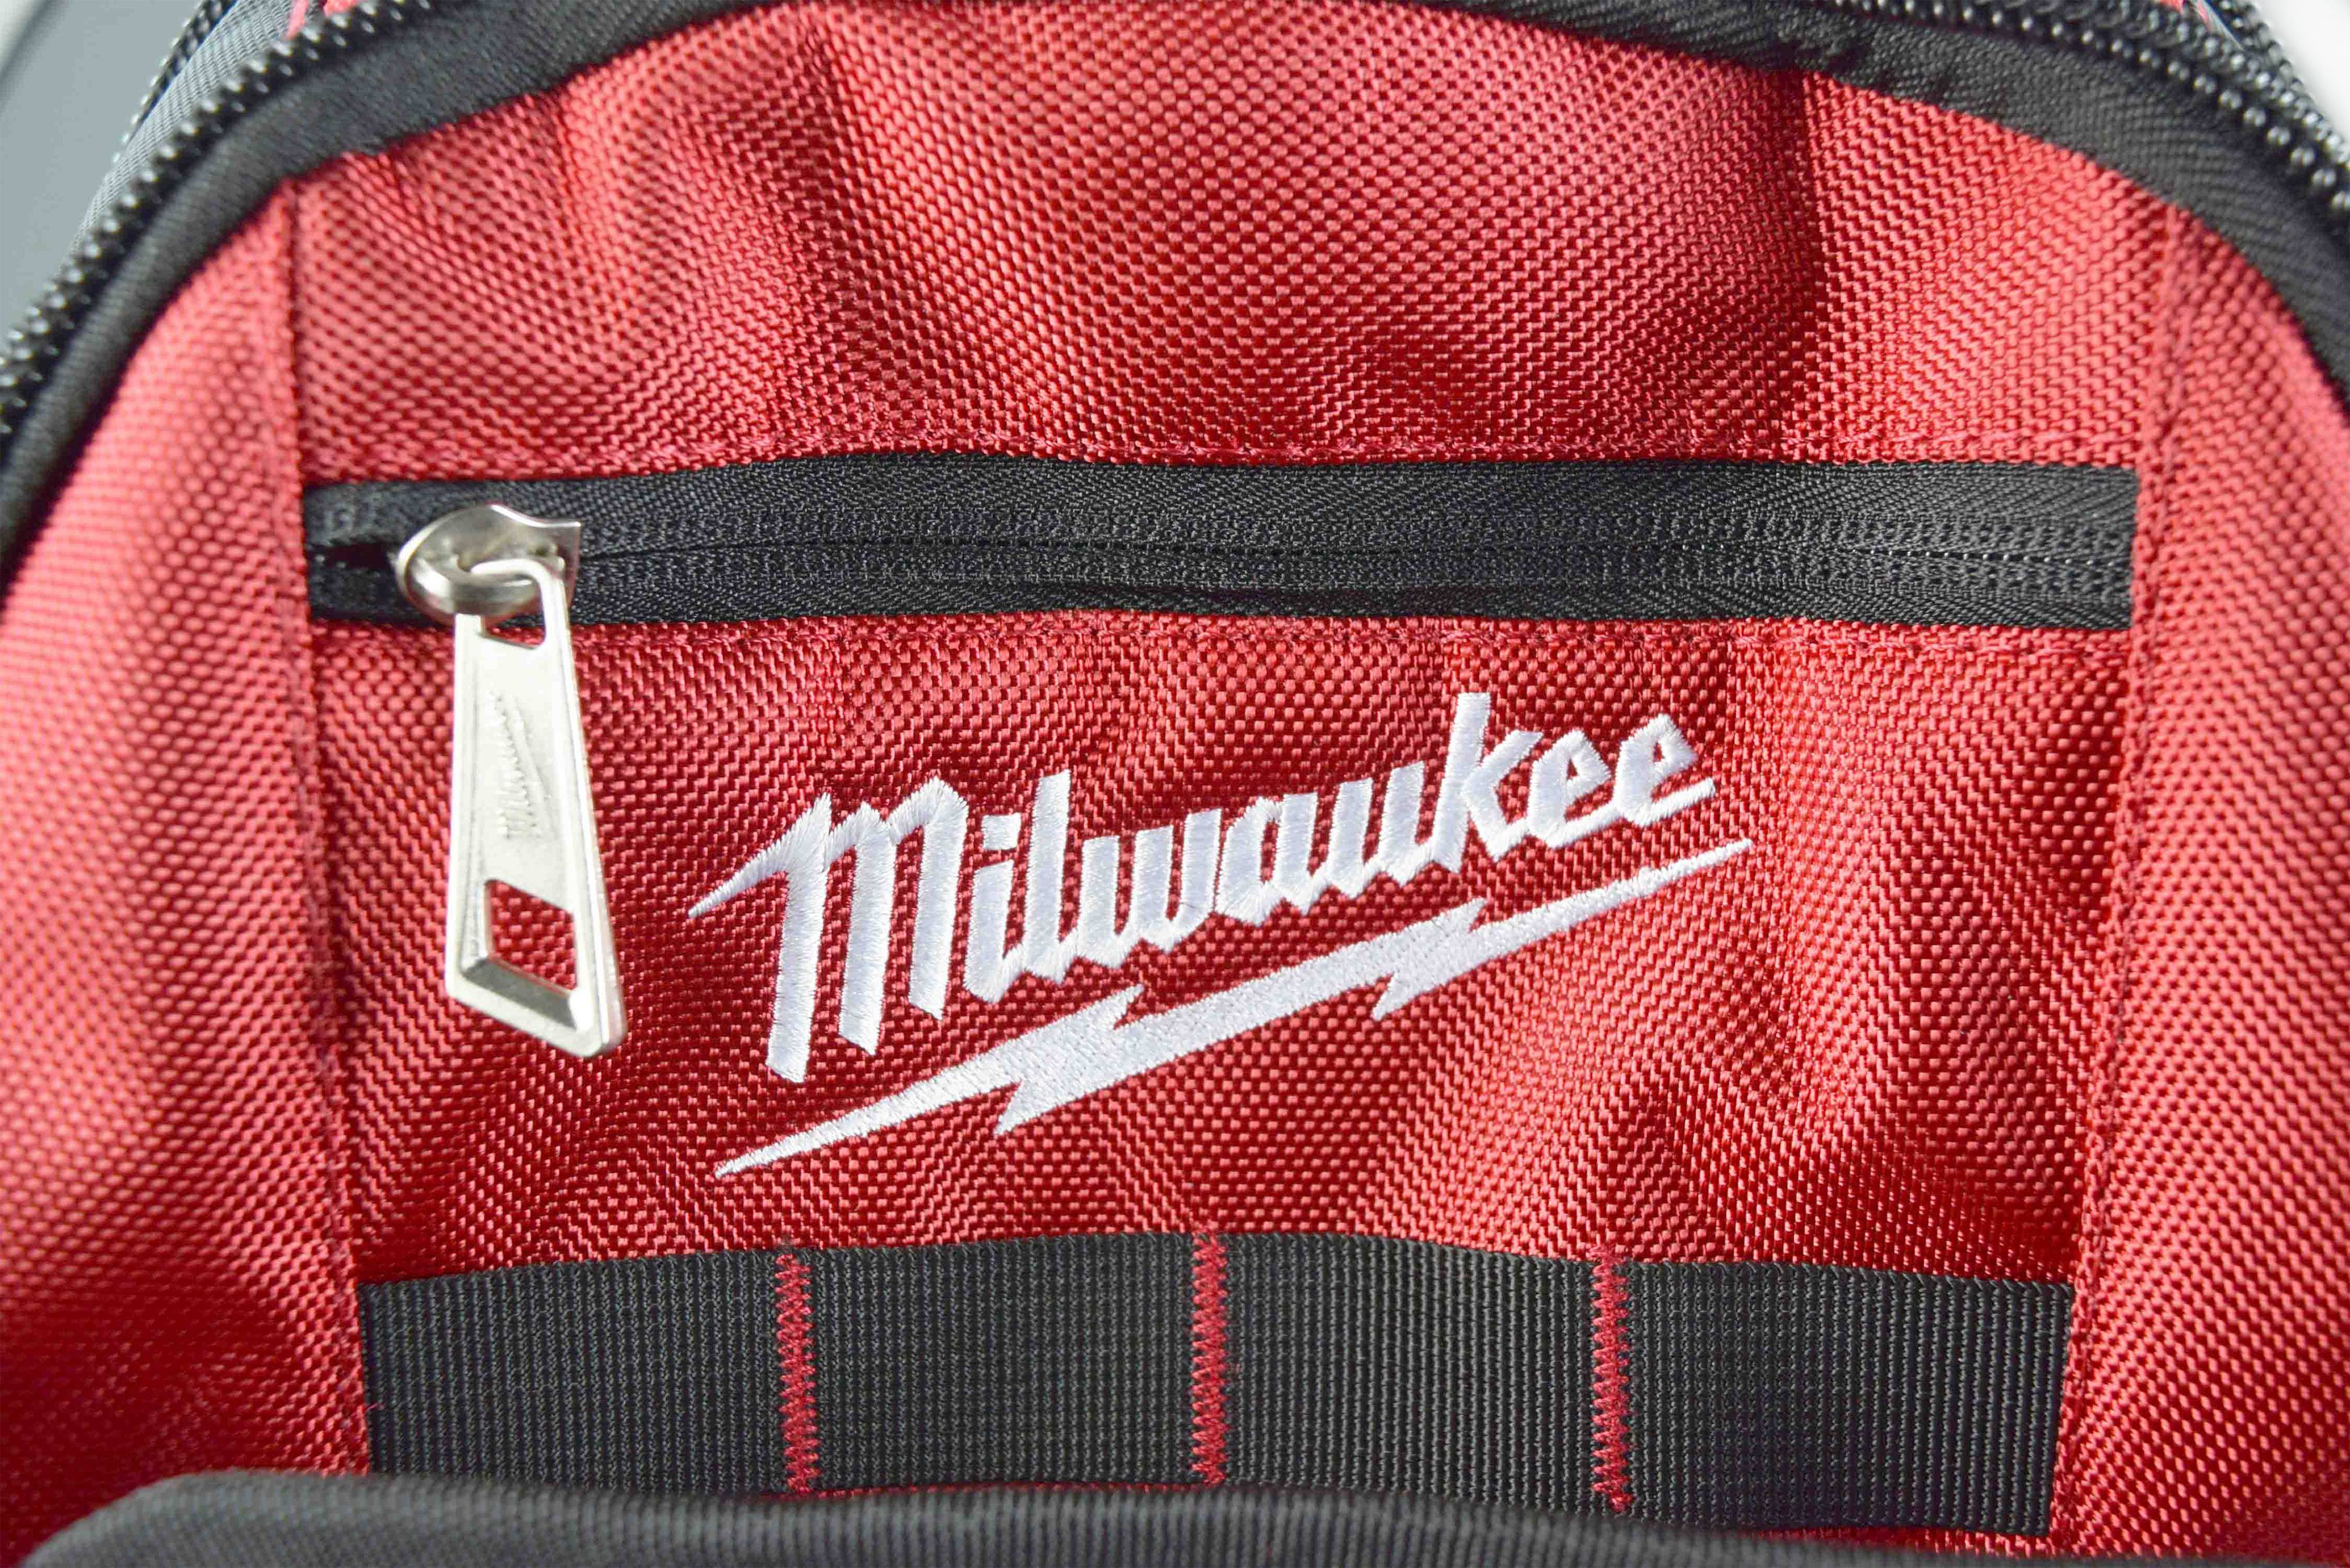 Milwaukee 48-22-8200 Jobsite Backpack